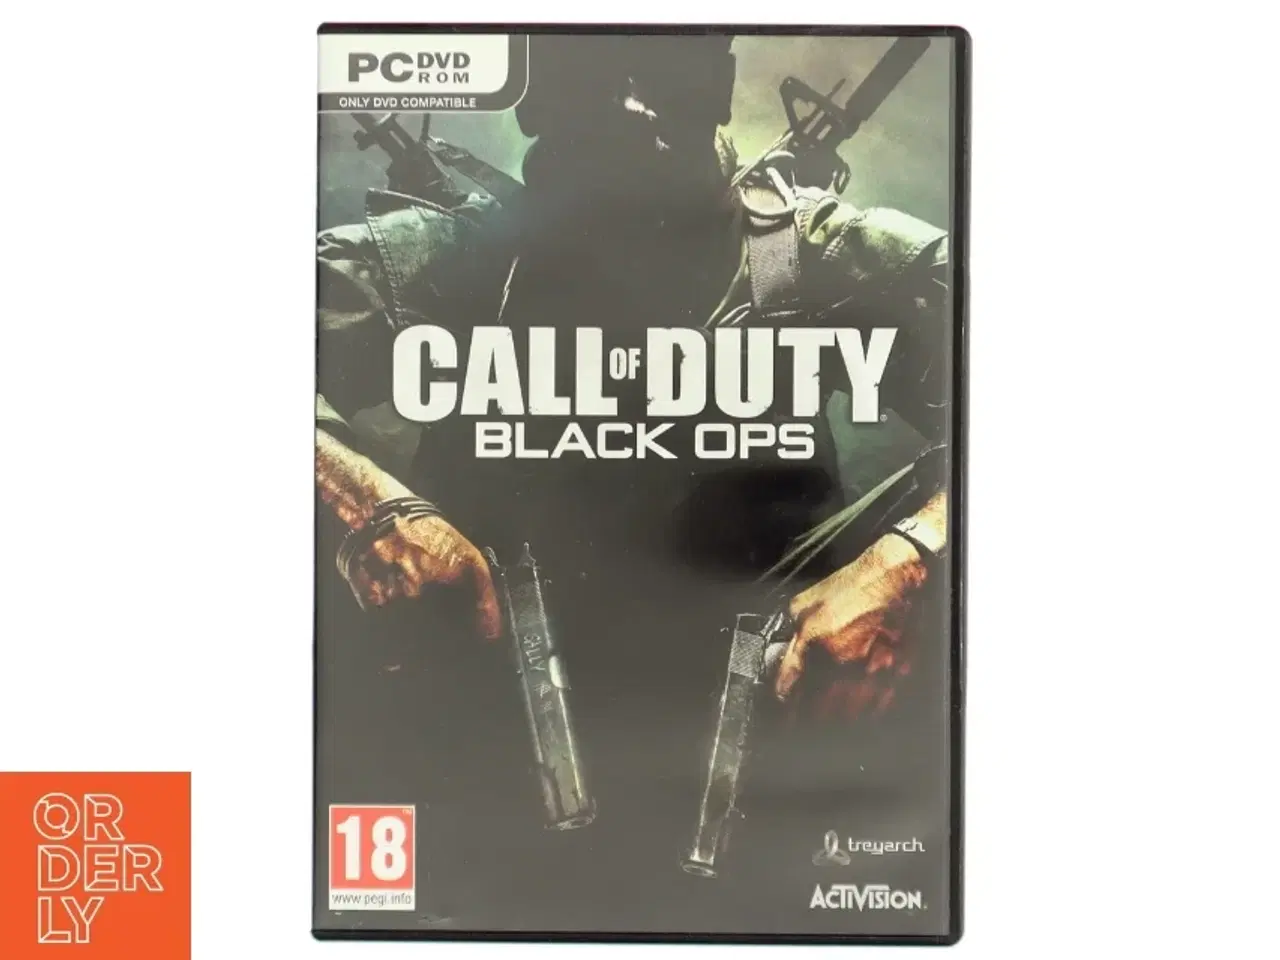 Billede 1 - Call of Duty: Black Ops PC spil fra Activision